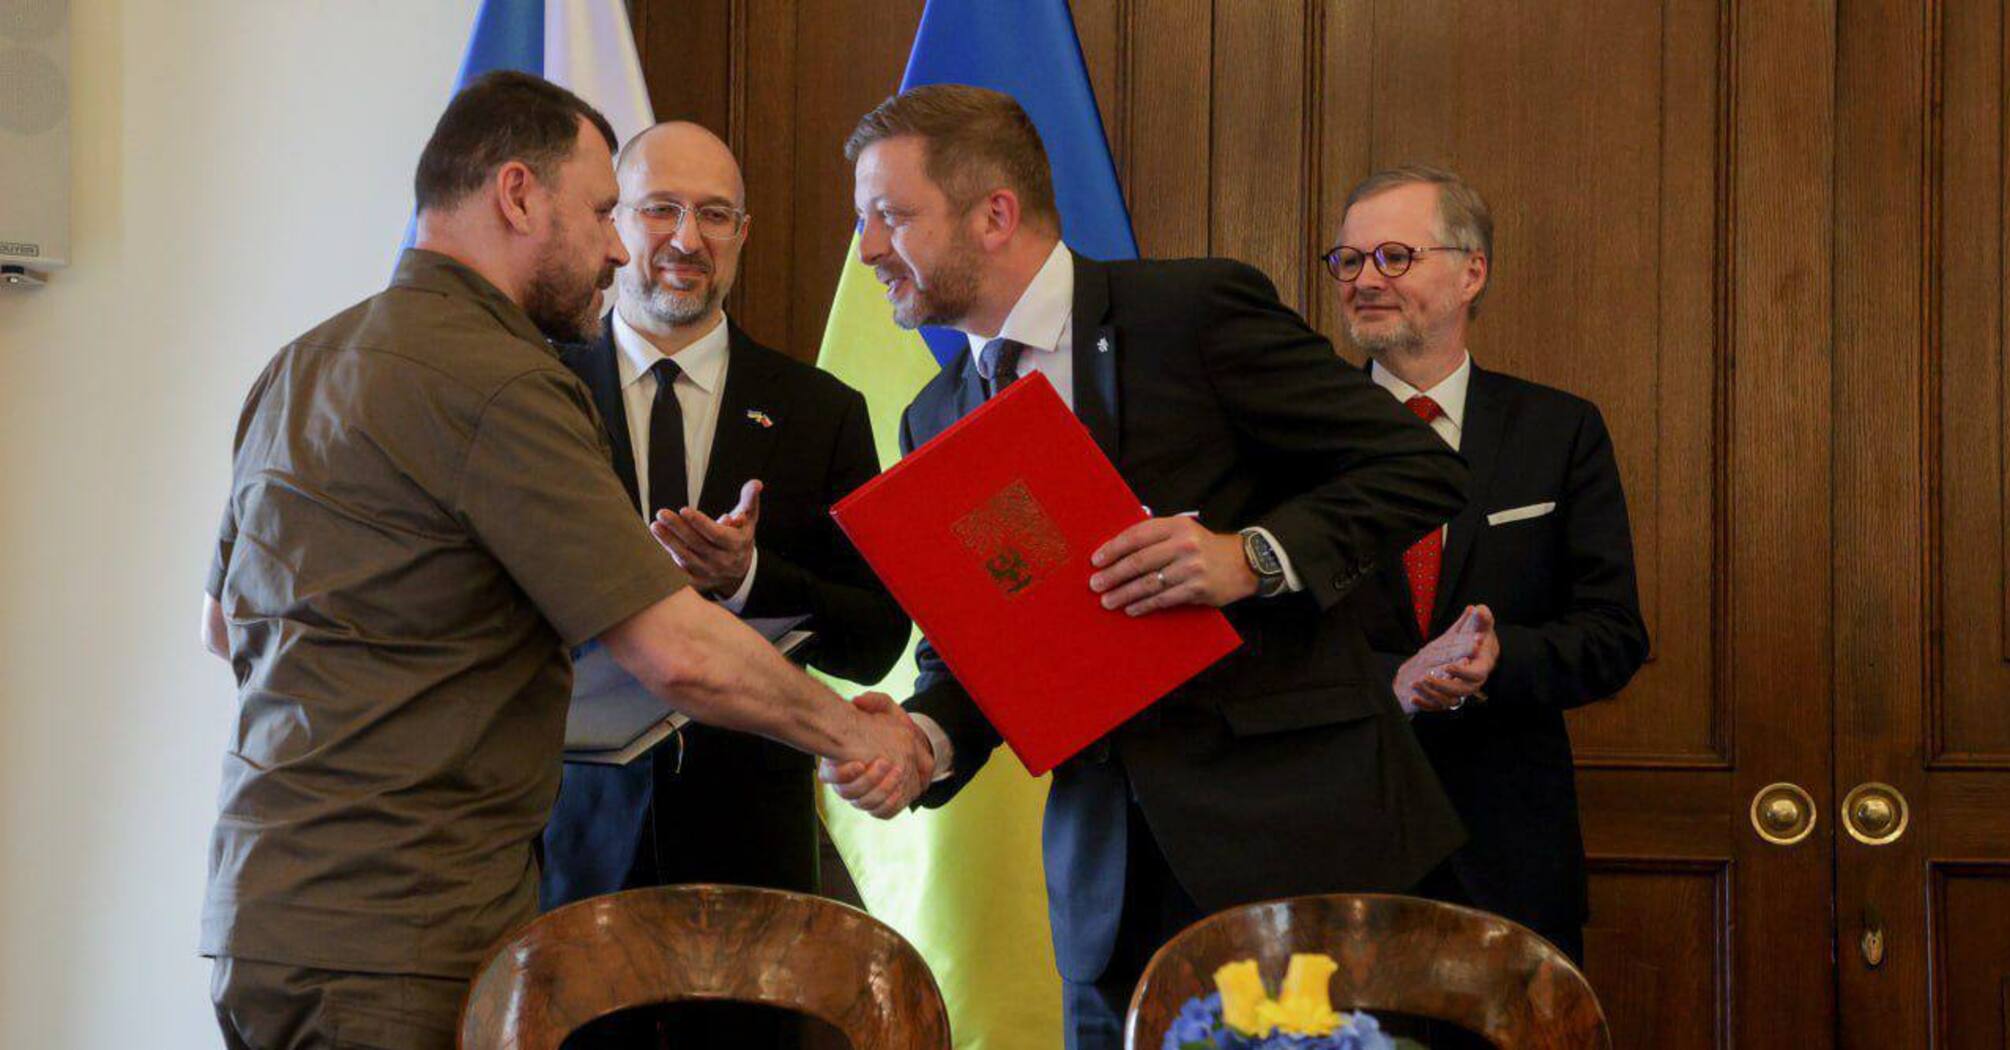 Ukraina podpisuje umowę z Czechami o zwalczaniu przestępczości: co przewiduje